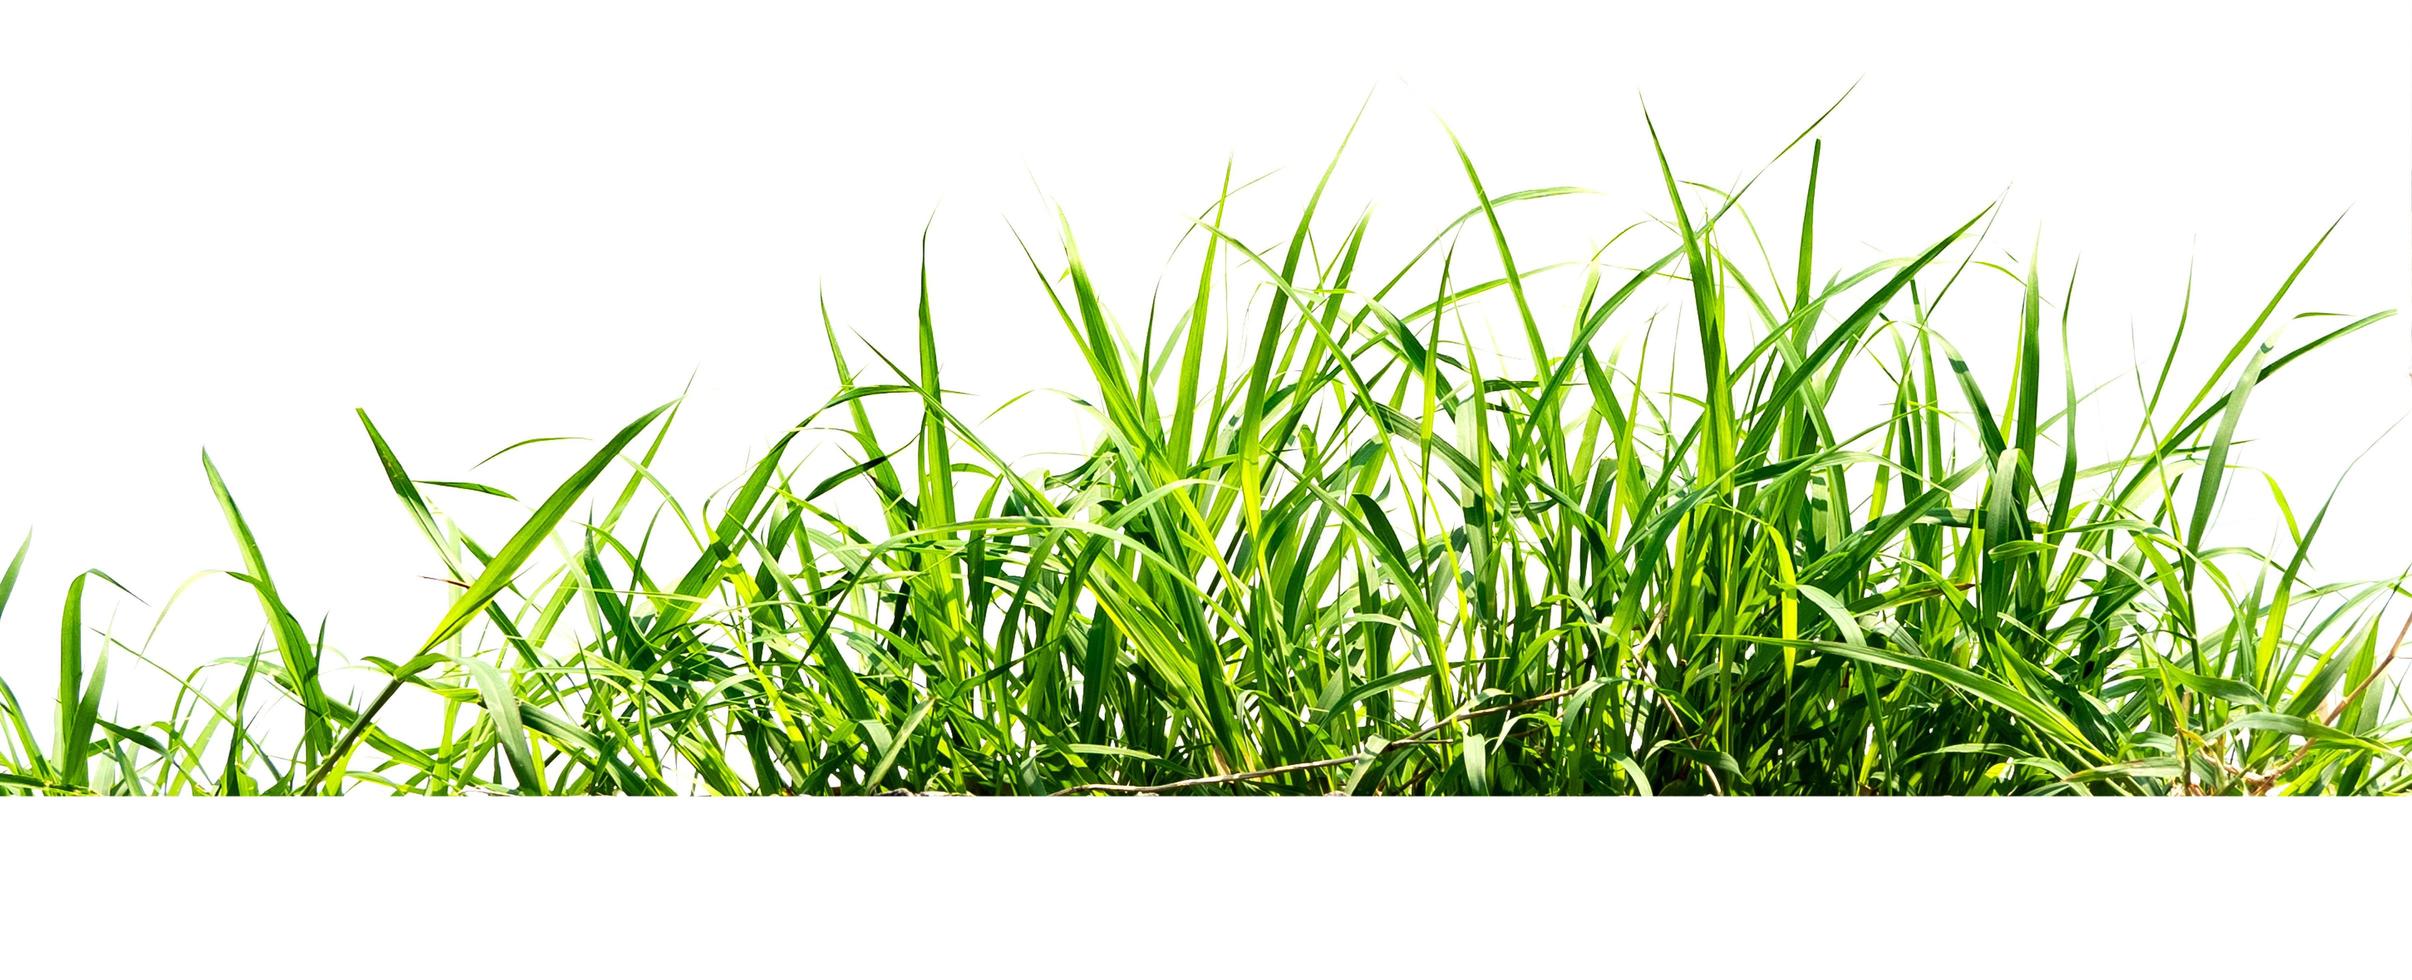 Aislar hierba verde sobre fondo blanco. foto